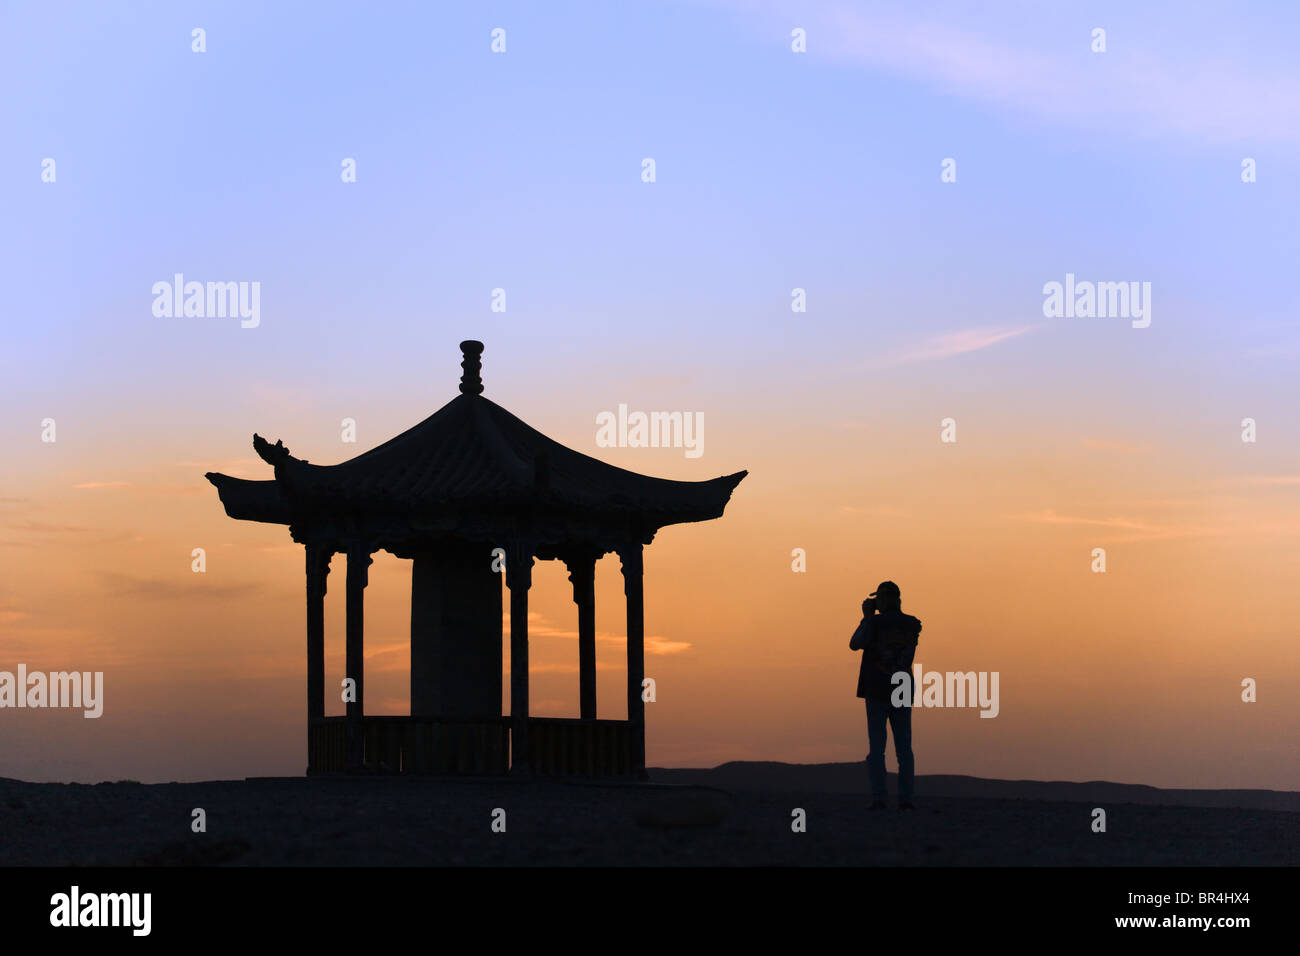 Western tourist with pavilion at sunset, Jiayuguan, Gansu Province, China Stock Photo